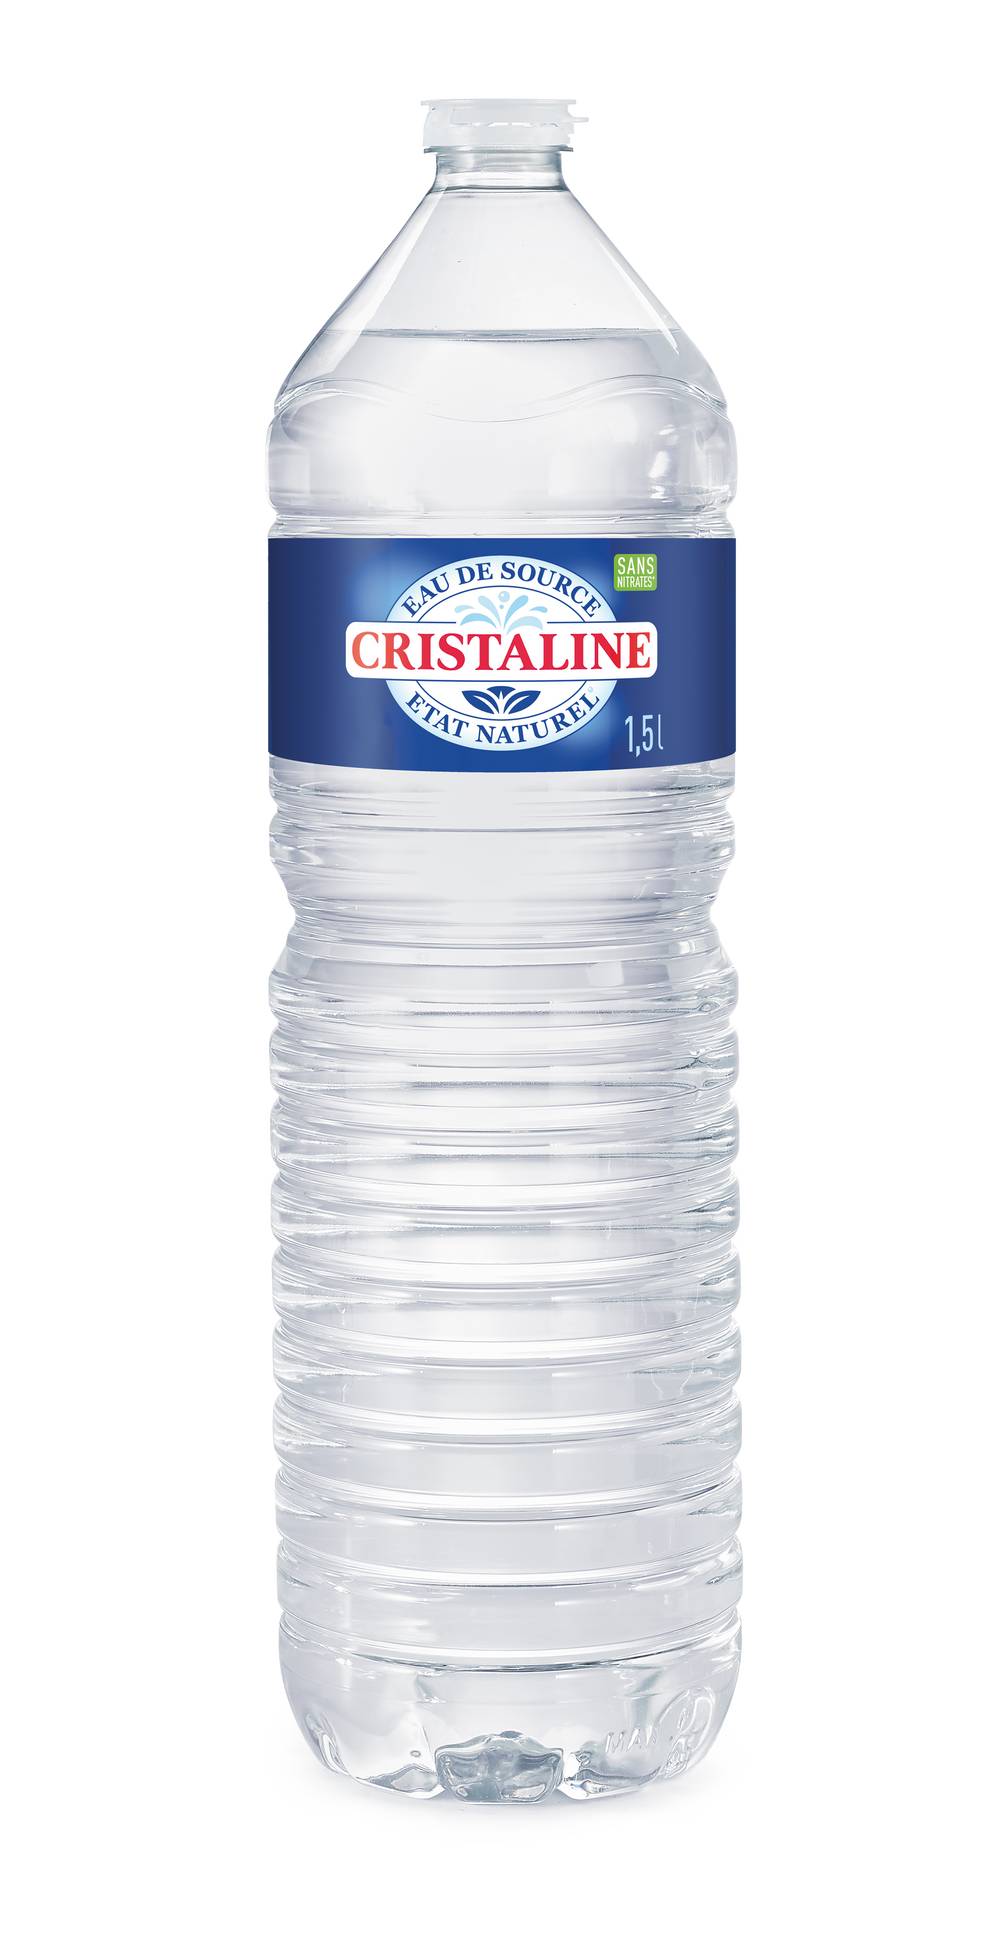 Cristaline - Eau de source (1.5 L)